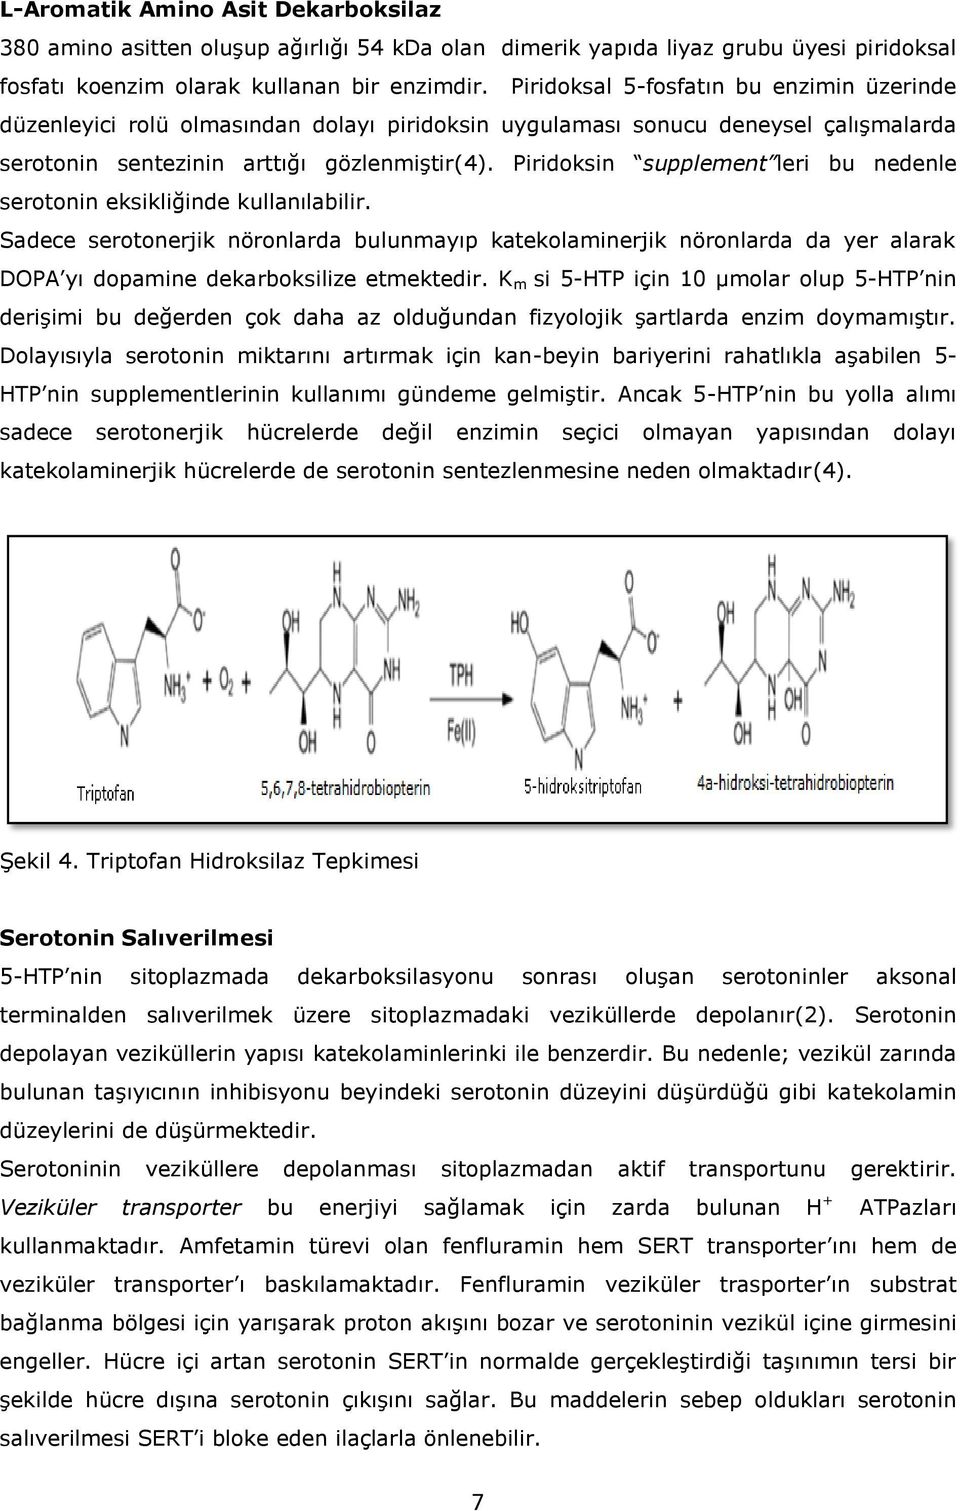 Piridoksin supplement leri bu nedenle serotonin eksikliğinde kullanılabilir.